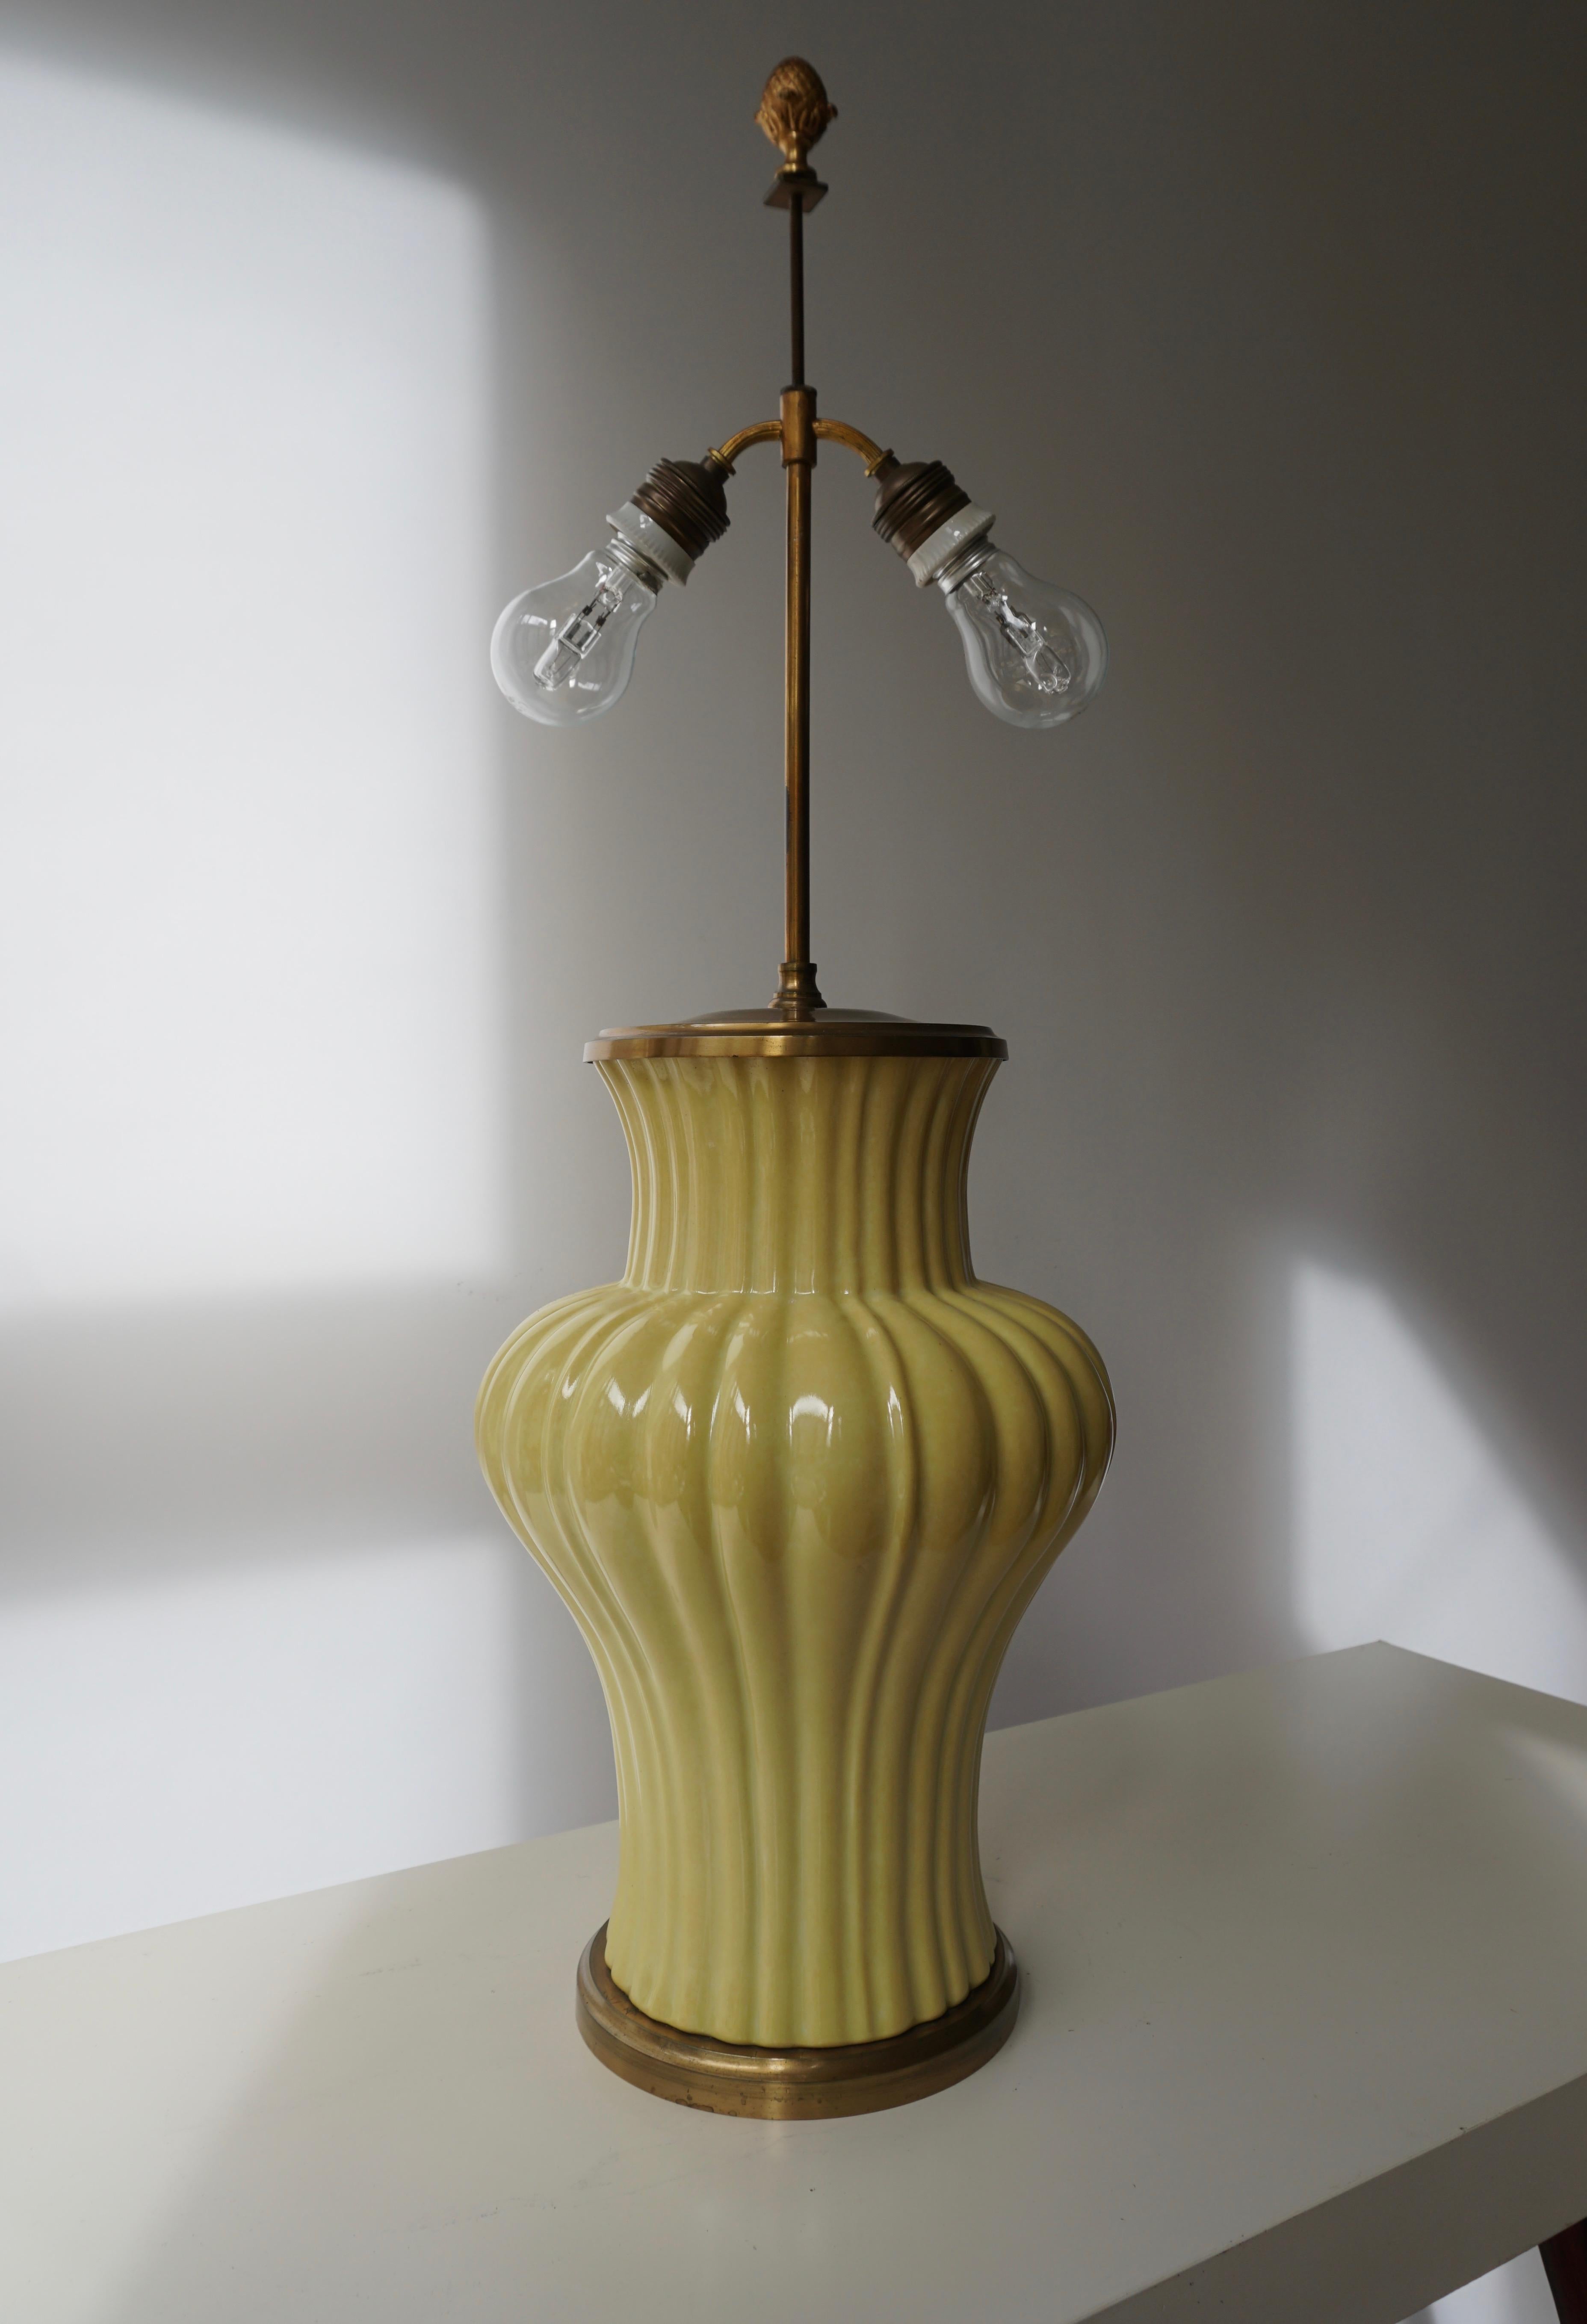 Lampe de table italienne en céramique et laiton.
Mesures : Hauteur base 37 cm.
Hauteur totale 75 cm.
Diamètre 24 cm.
Poids 5 kg.